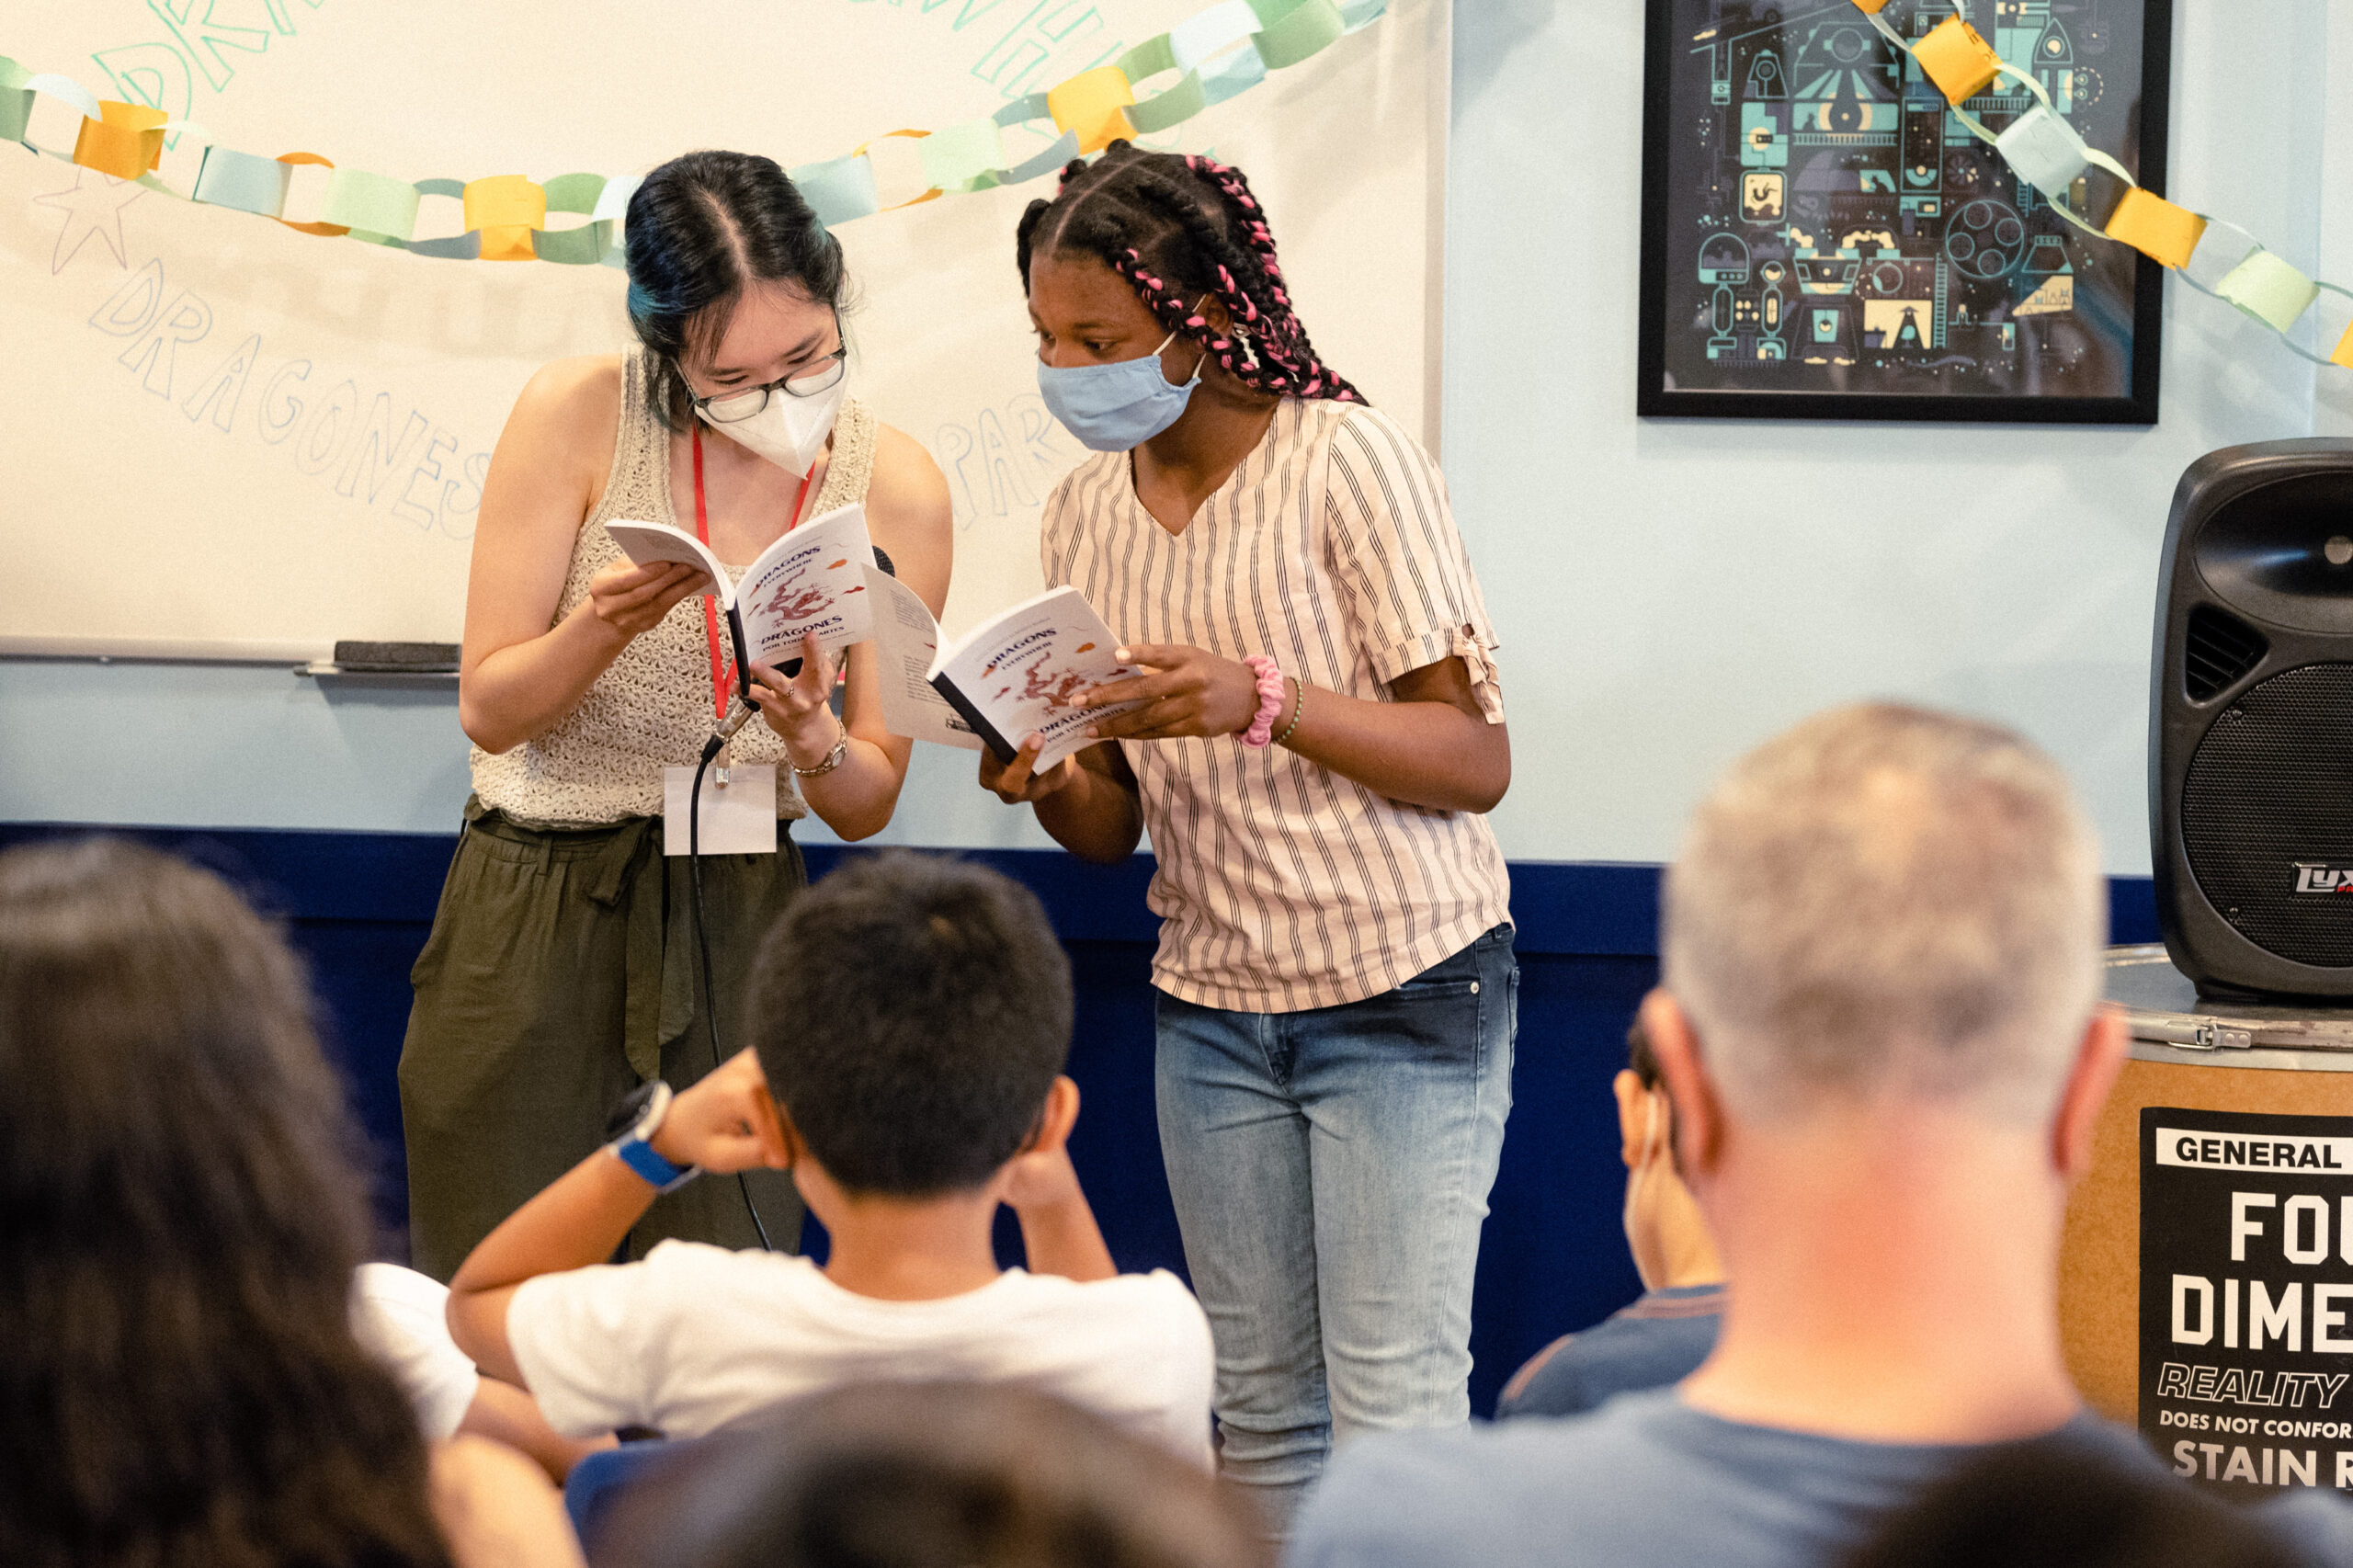 Un estudiante y un miembro del personal miran juntos copias de un libro de notas para estudiantes, frente a una audiencia que espera.